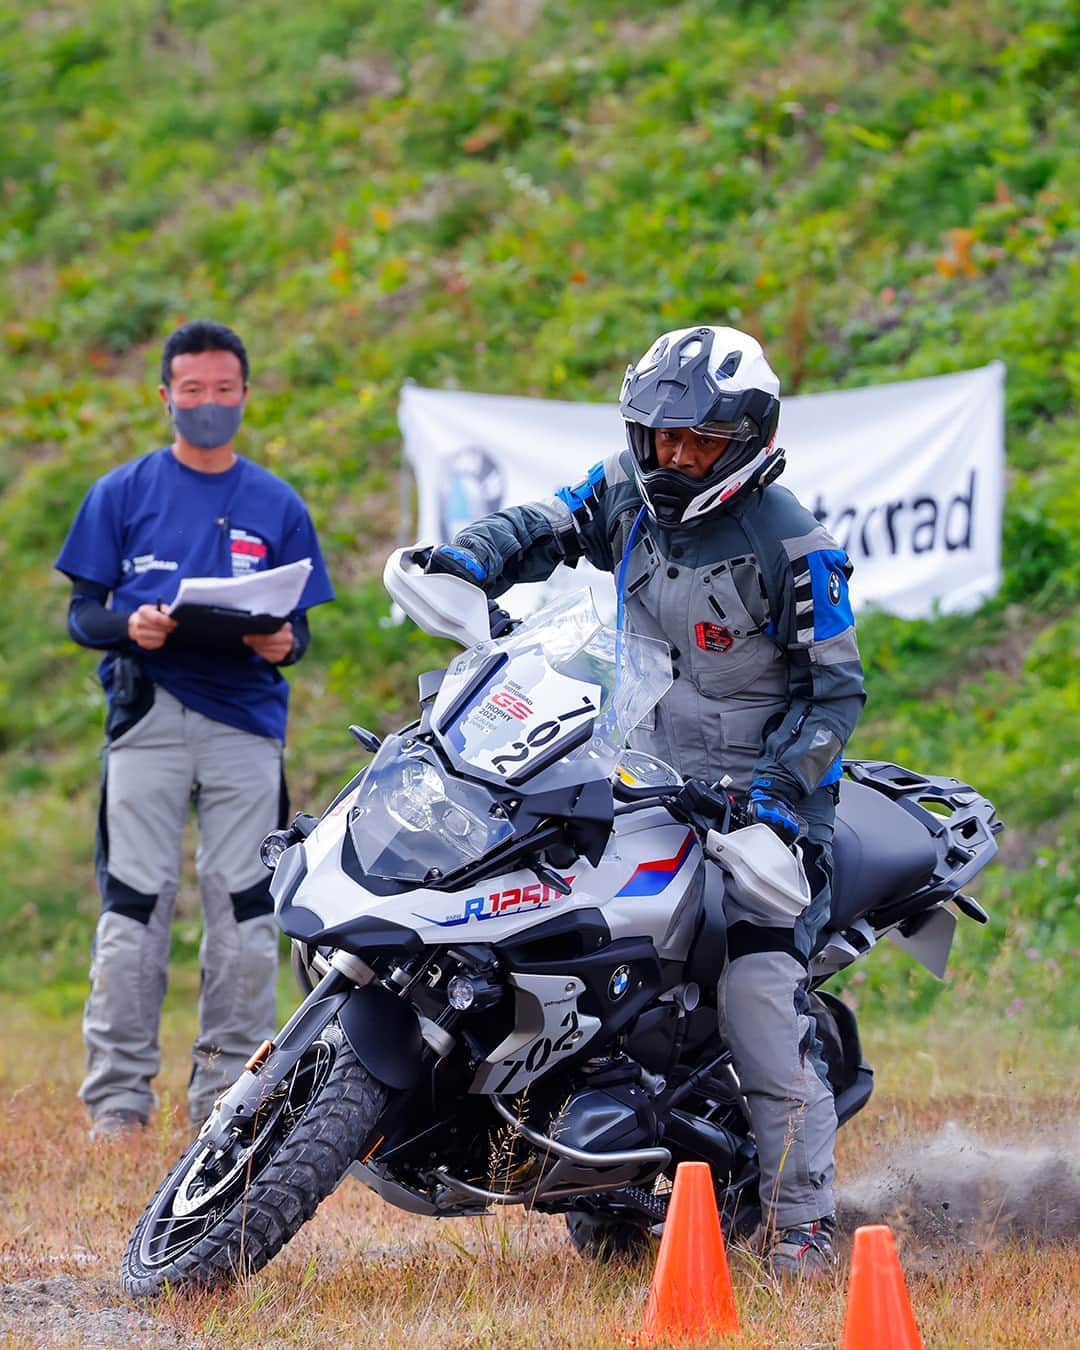 BMW Motorrad Japanのインスタグラム：「BMW Motorrad Japanは、11/3(土)-5(日)に群馬県のパルコール嬬恋リゾートで「International GS Trophy 2024 日本国内予選会」を開催します。  2024年にアフリカ・ナミビアで開催される本大会に出場する日本代表団を決定する予選会には、日本全国からGSライダーが集結します。  この予選会は自由に見学できるイベントです。お知り合いが出場される方はもちろん、将来的にGS Trophy予選会への参加を考えている方など、どなたでも自由に観覧できます。  会場に足を運んでいただき、ぜひGSライダーたちに熱い声援を届けてください！  予選会の詳細はBMW Motorrad Japanの公式Webサイトにも掲載中です。  #SpiritOfGS #InternationalGSTrophy #BMWMotorrad #BMWモトラッド #駆けぬける歓び」